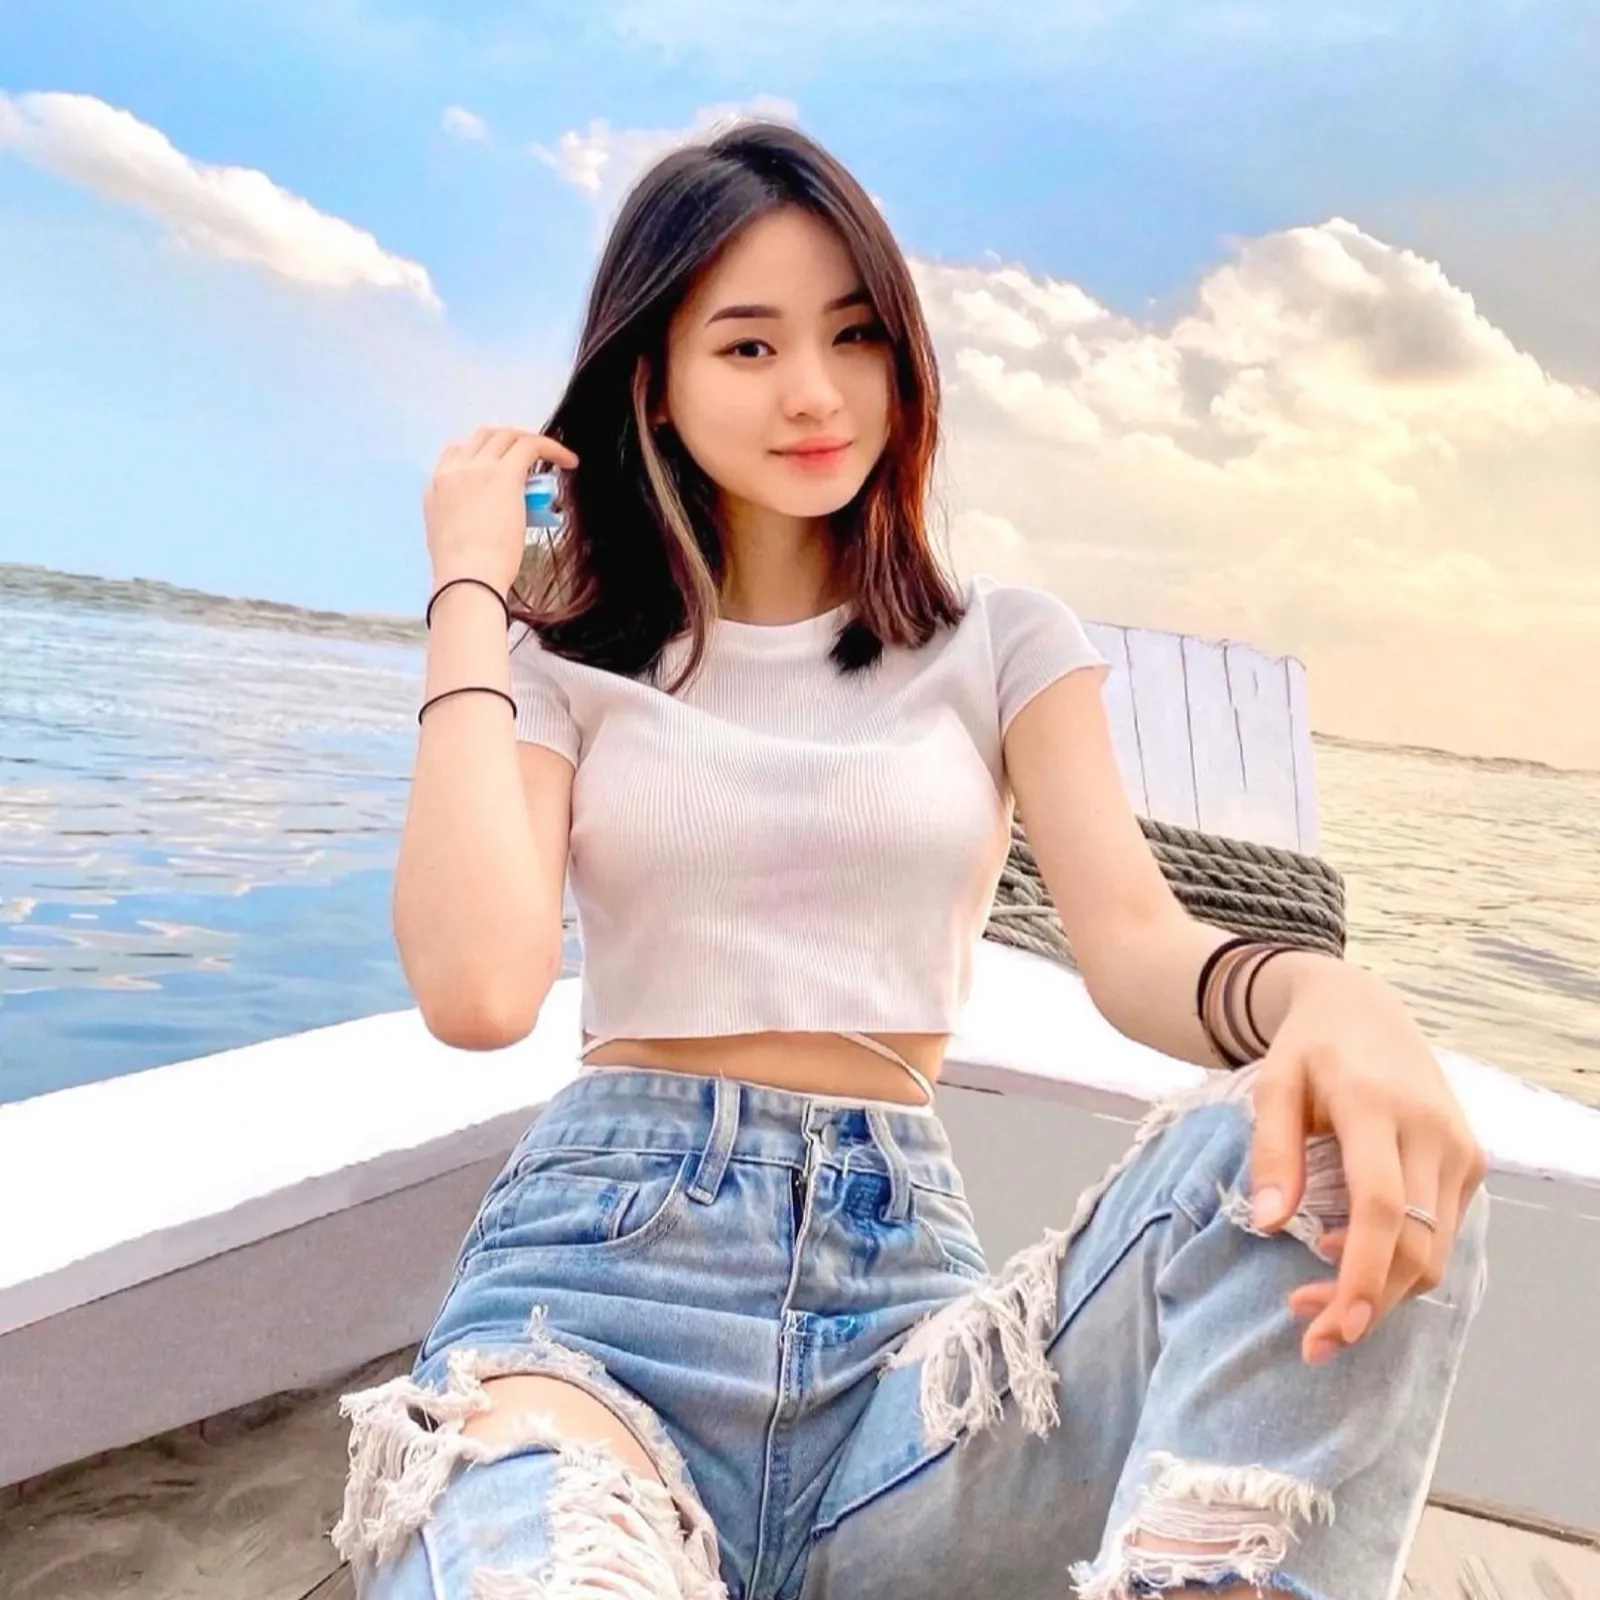 Potret Cantik Catheez, Gamer Viral asal Surabaya